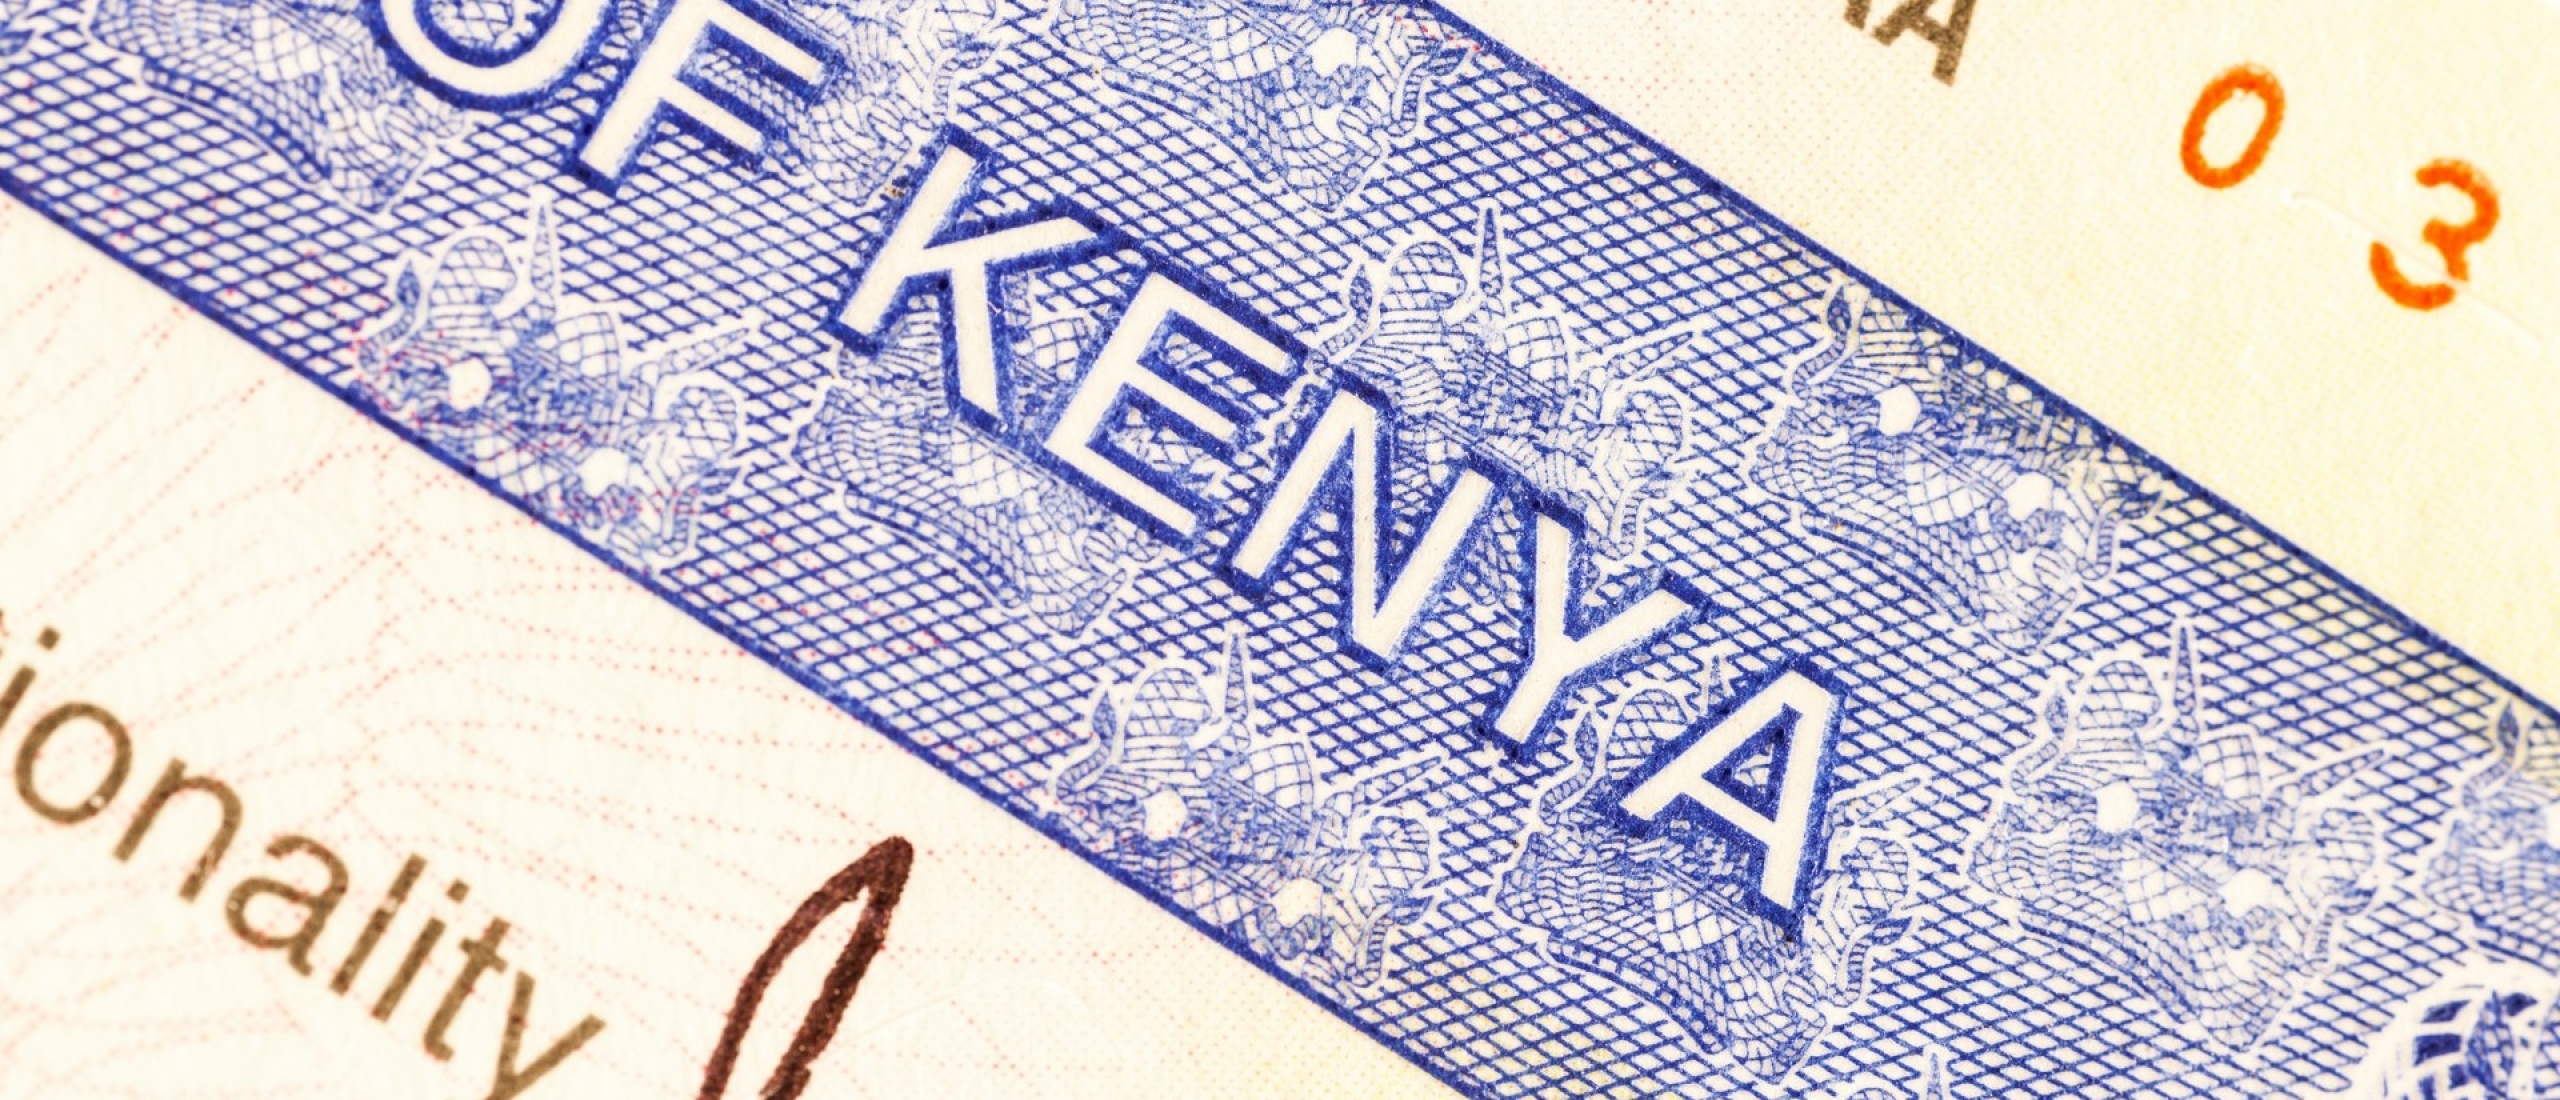 Hoe moet ik een visum voor Kenia aanvragen